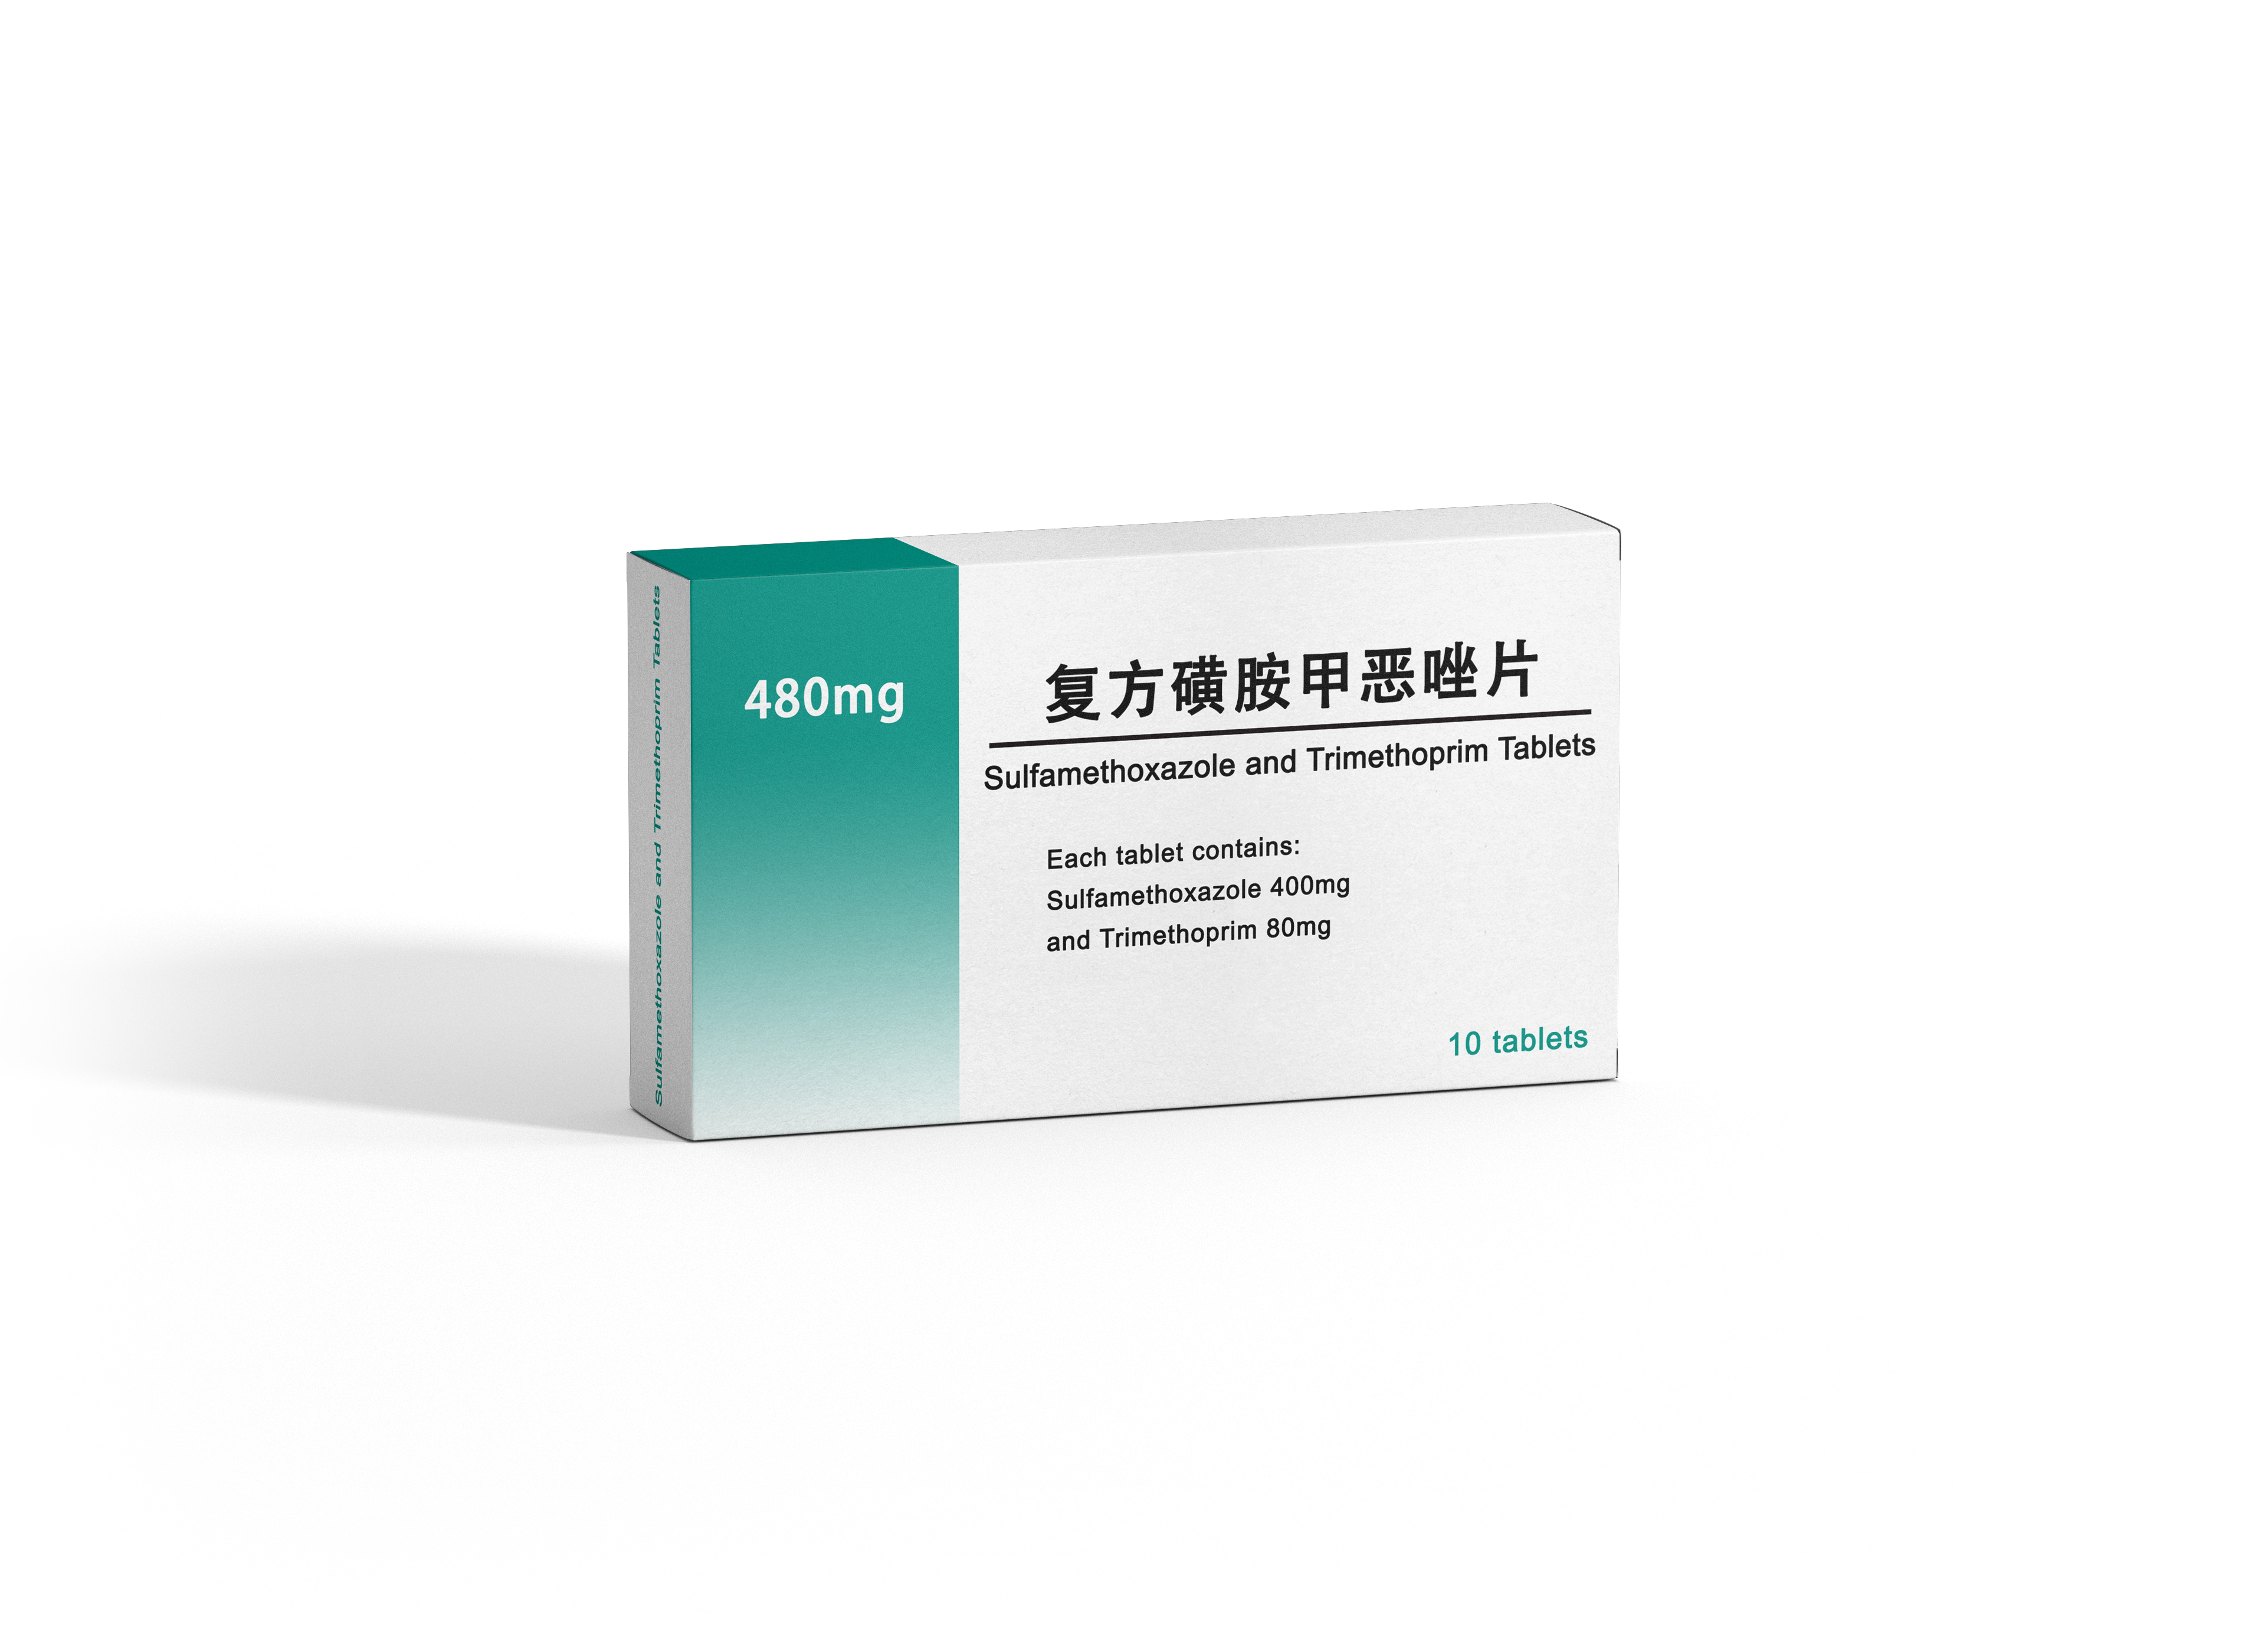 Comprimidos de sulfametoxazol y trimetoprima